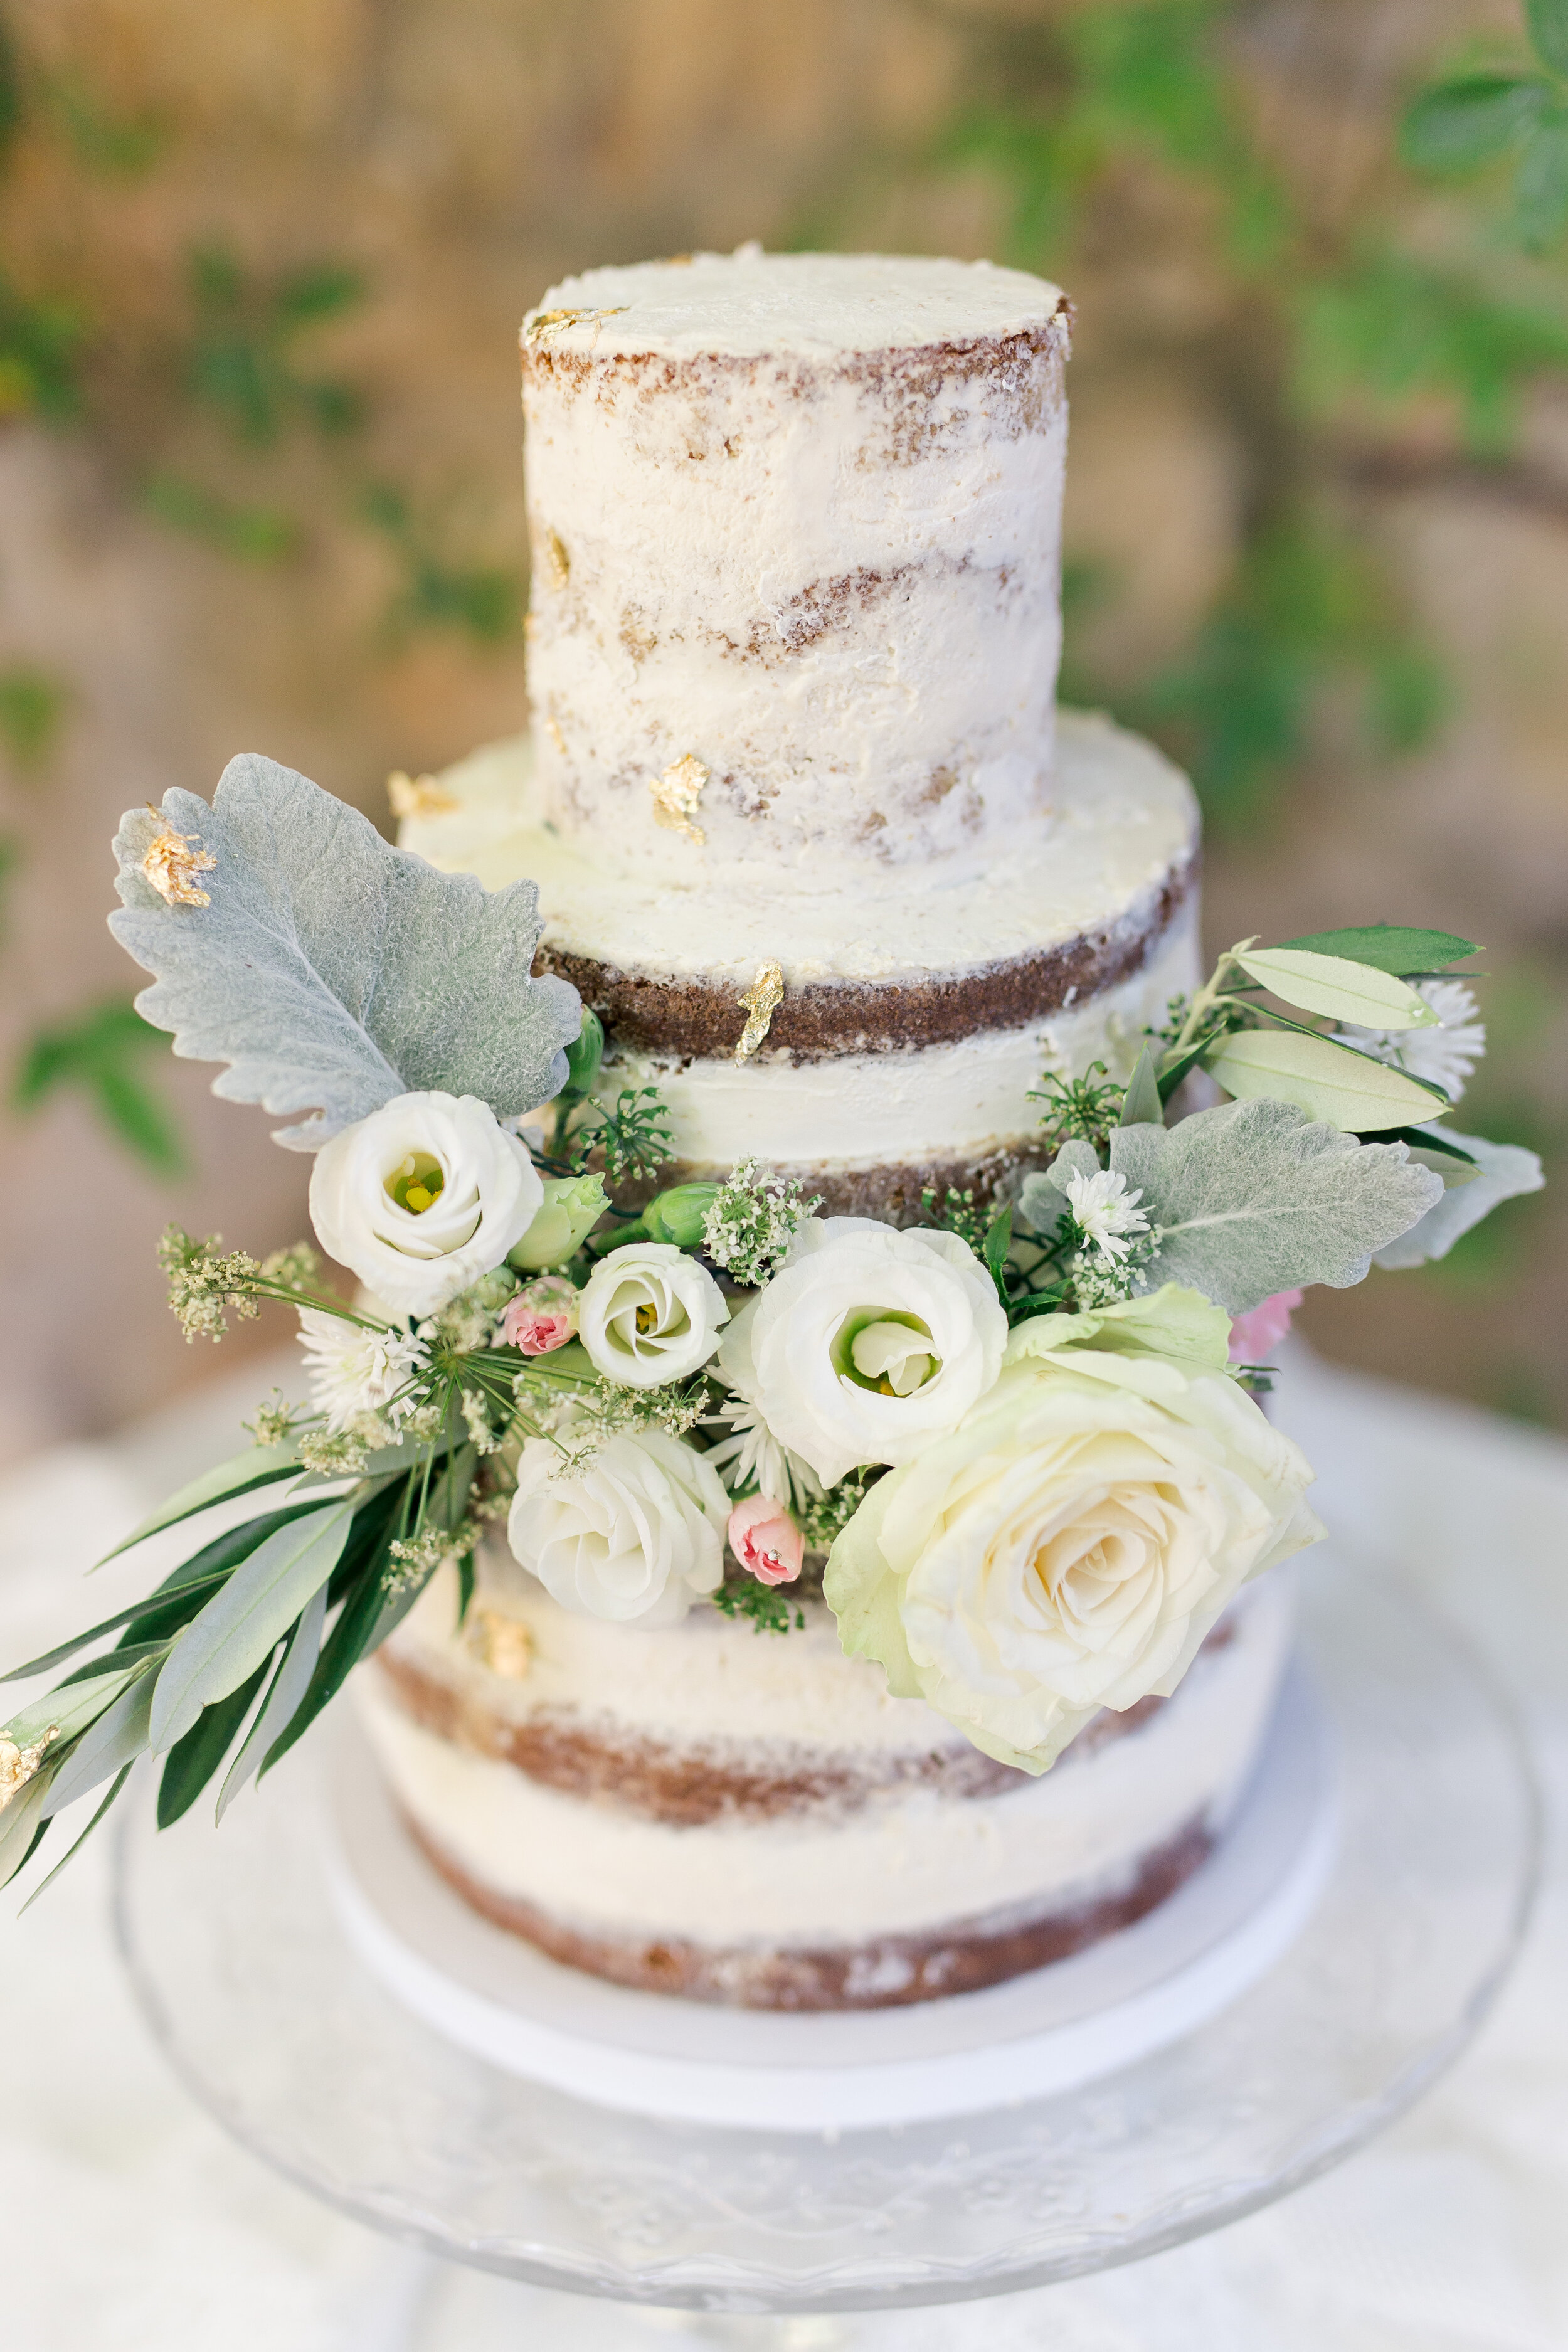 Gros plan sur le wedding cake avec ses fleurs blanches et roses claires, et des feuilles d'or.